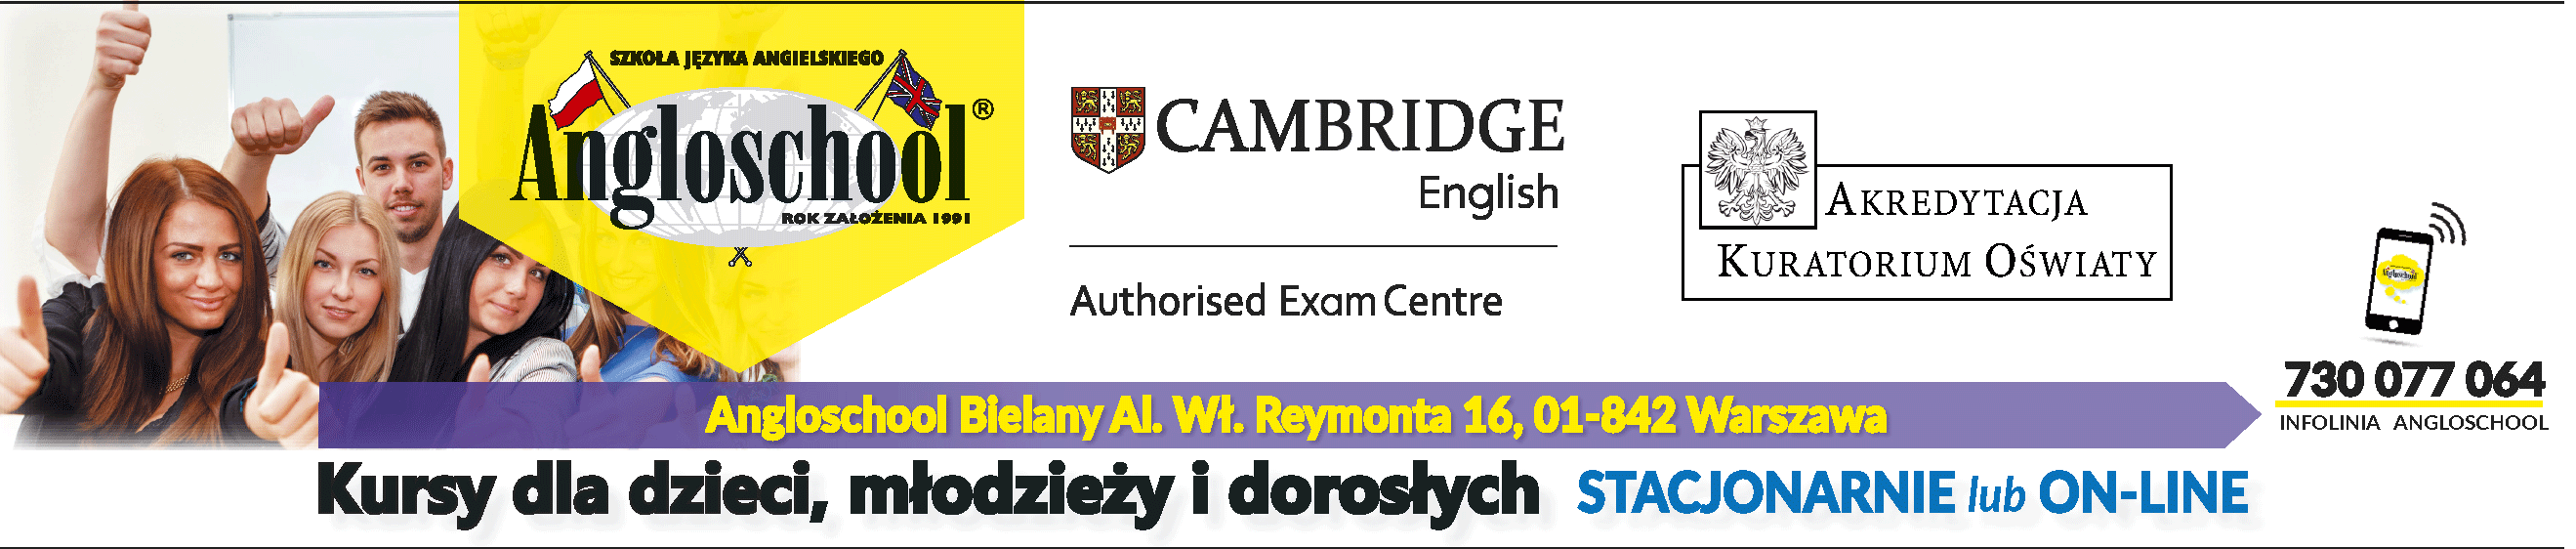 Angloschool Bielany - Angielski Warszawa dla dzieci, młodzieży i dorosłych, lekcje stacjonarne i Online.